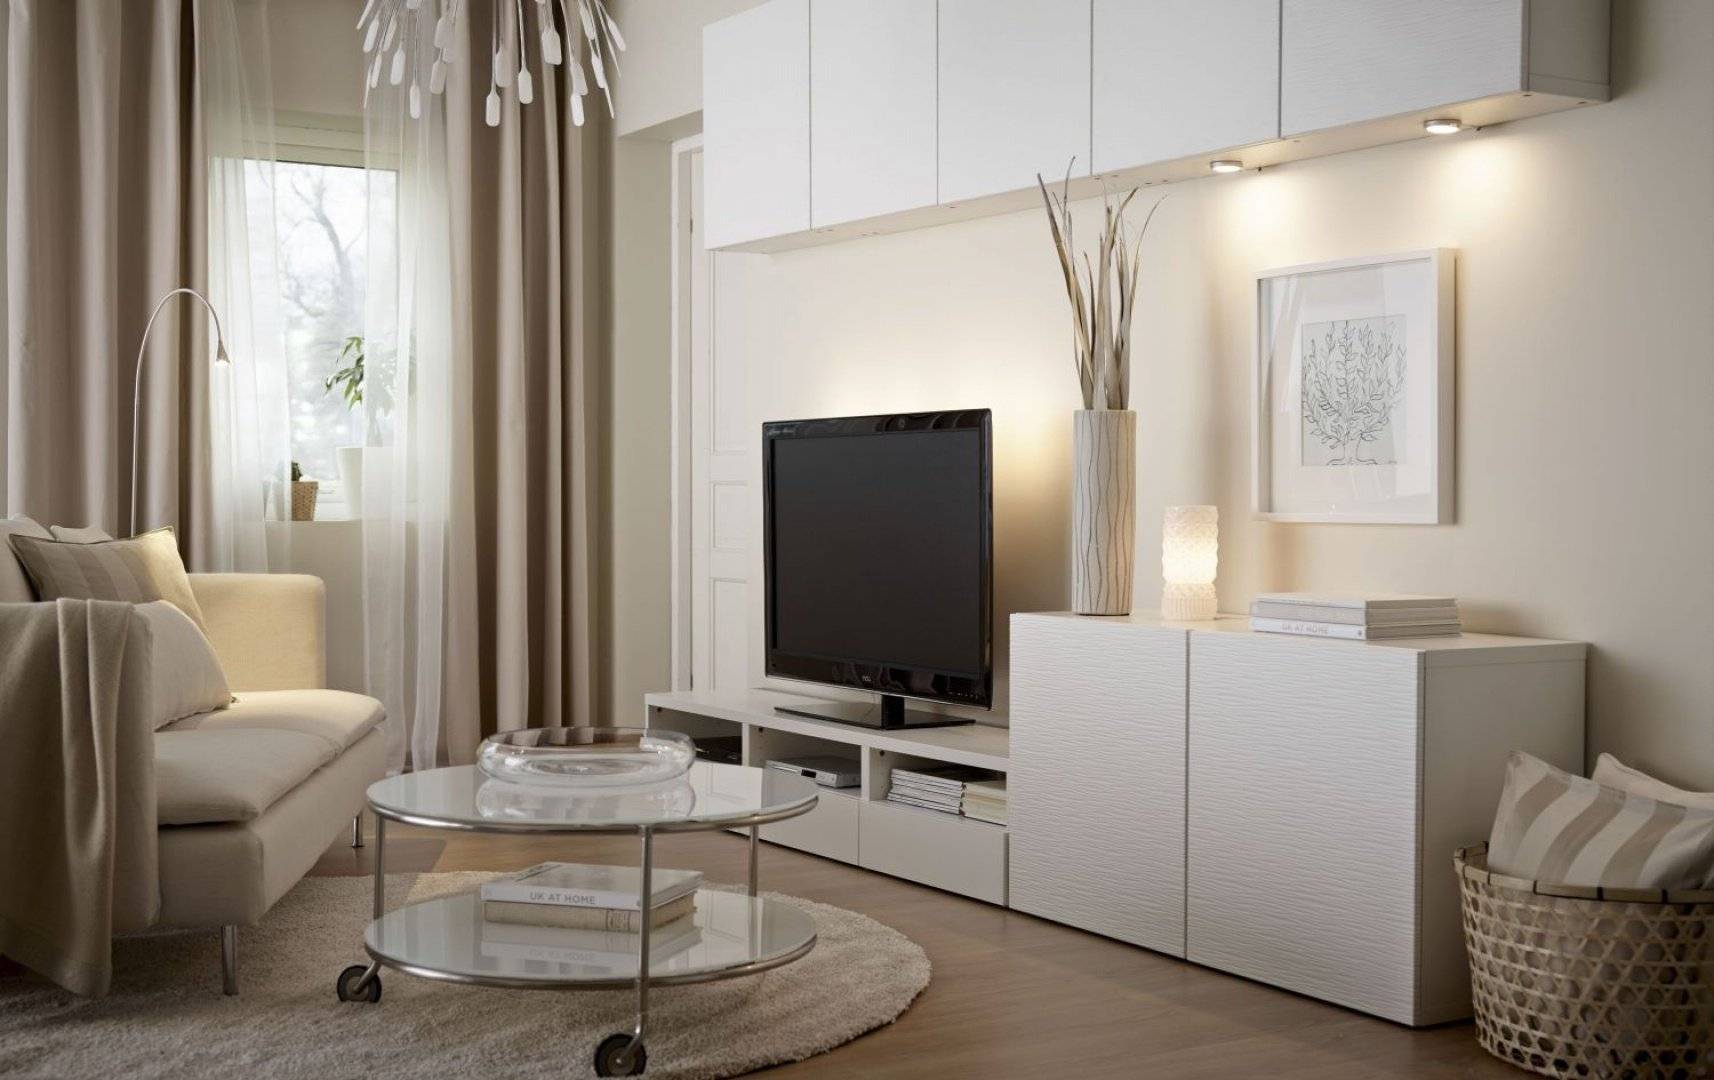 Белая гостиная: современные варианты оформления интерьера, цветовые сочетания и фото готовых решений